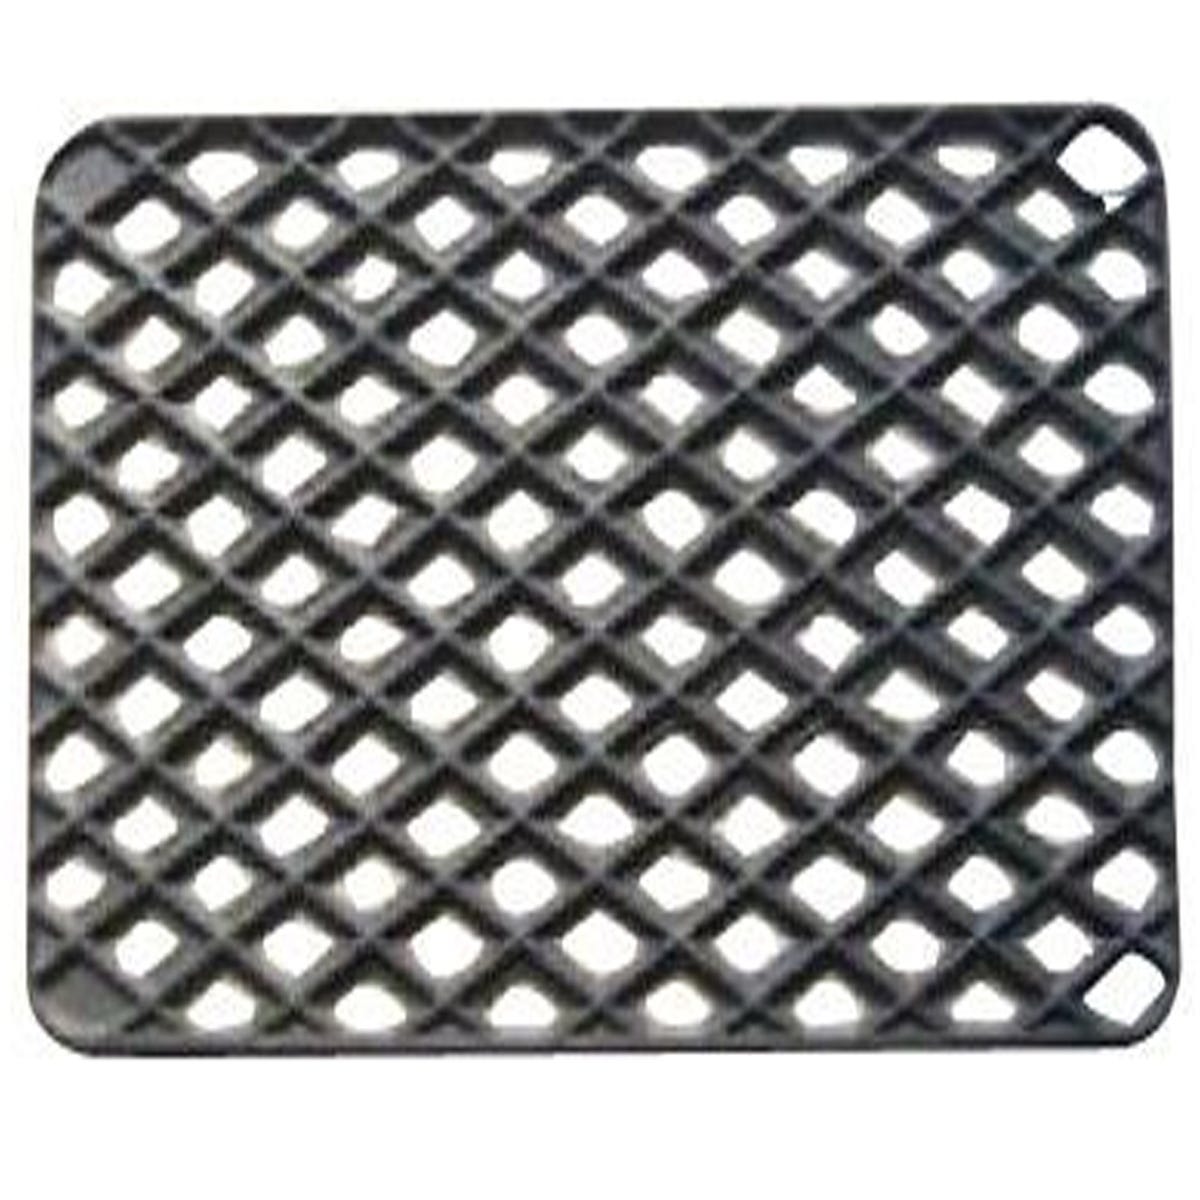 Tapis gratte-pieds extérieur grille maille en caoutchouc - dim : 45 x 75 cm  - Conforama